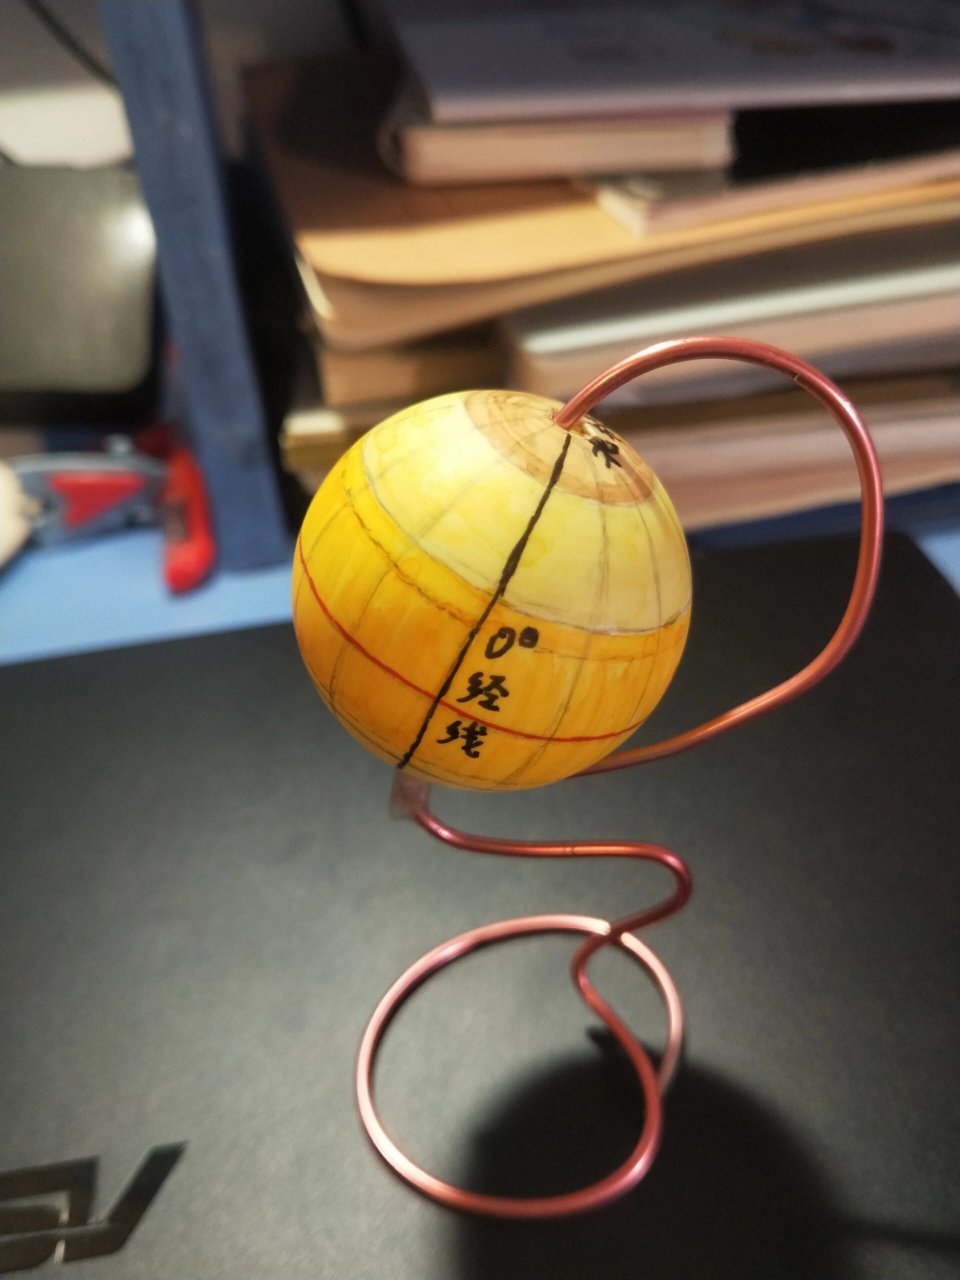 国庆地理作业,自制地球仪 我用乒乓球做了个小地球仪